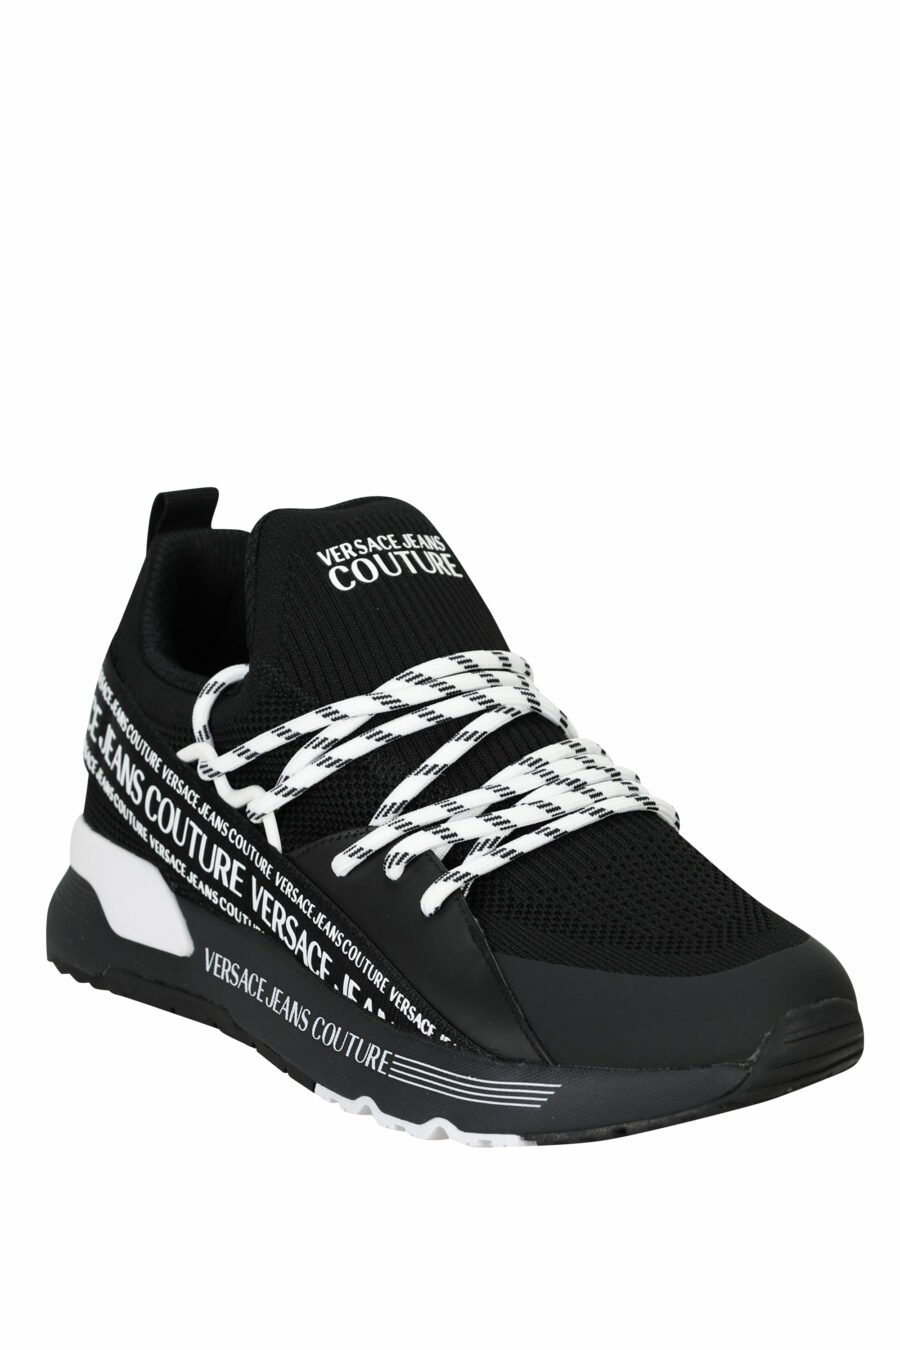 Zapatillas negras "dynamic" con minilogo en cinta y cordones bicolor - 8052019605884 1